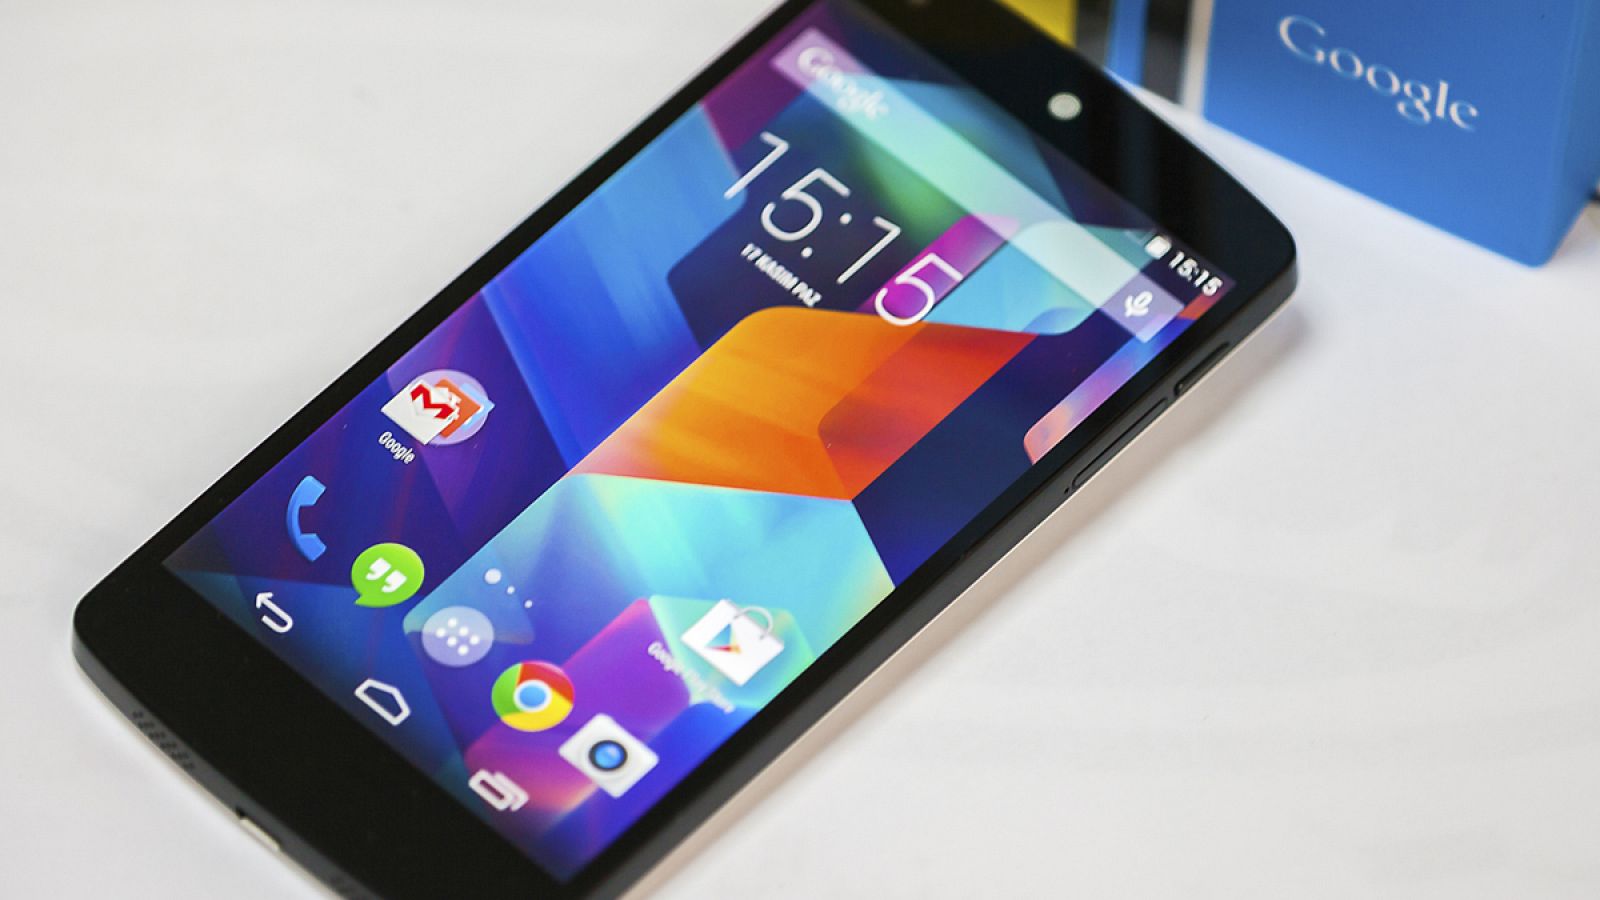 La nueva versión de Android llegará primero a dispositivos Nexus y a tabletas Pixel C.